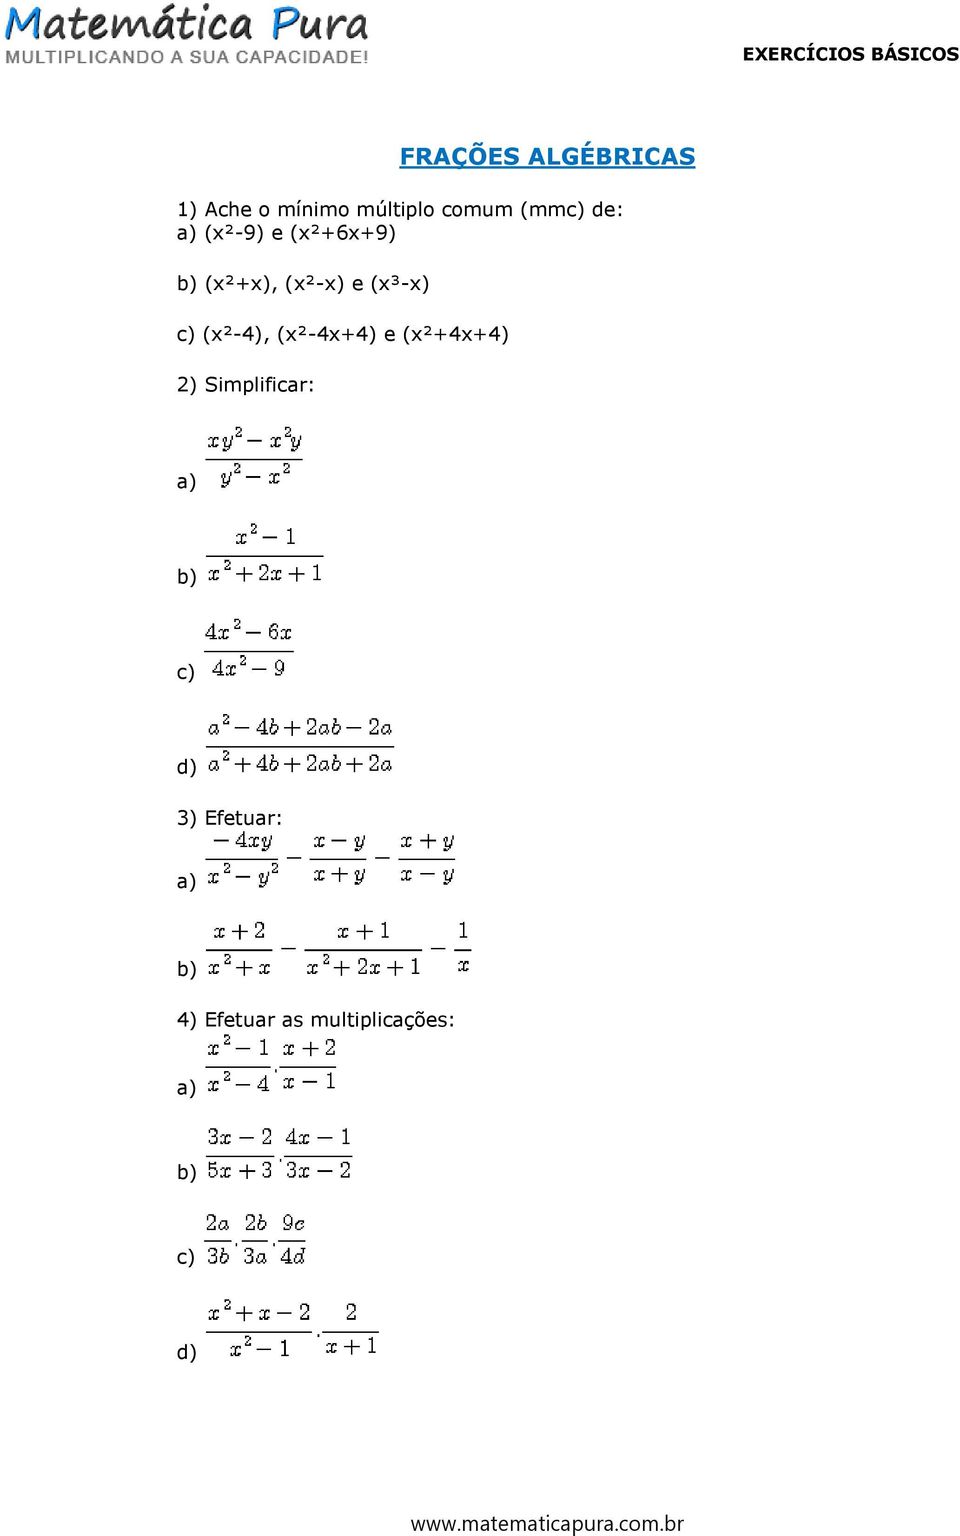 (x³-x) c) (x²-4), (x²-4x+4) e (x²+4x+4) 2)